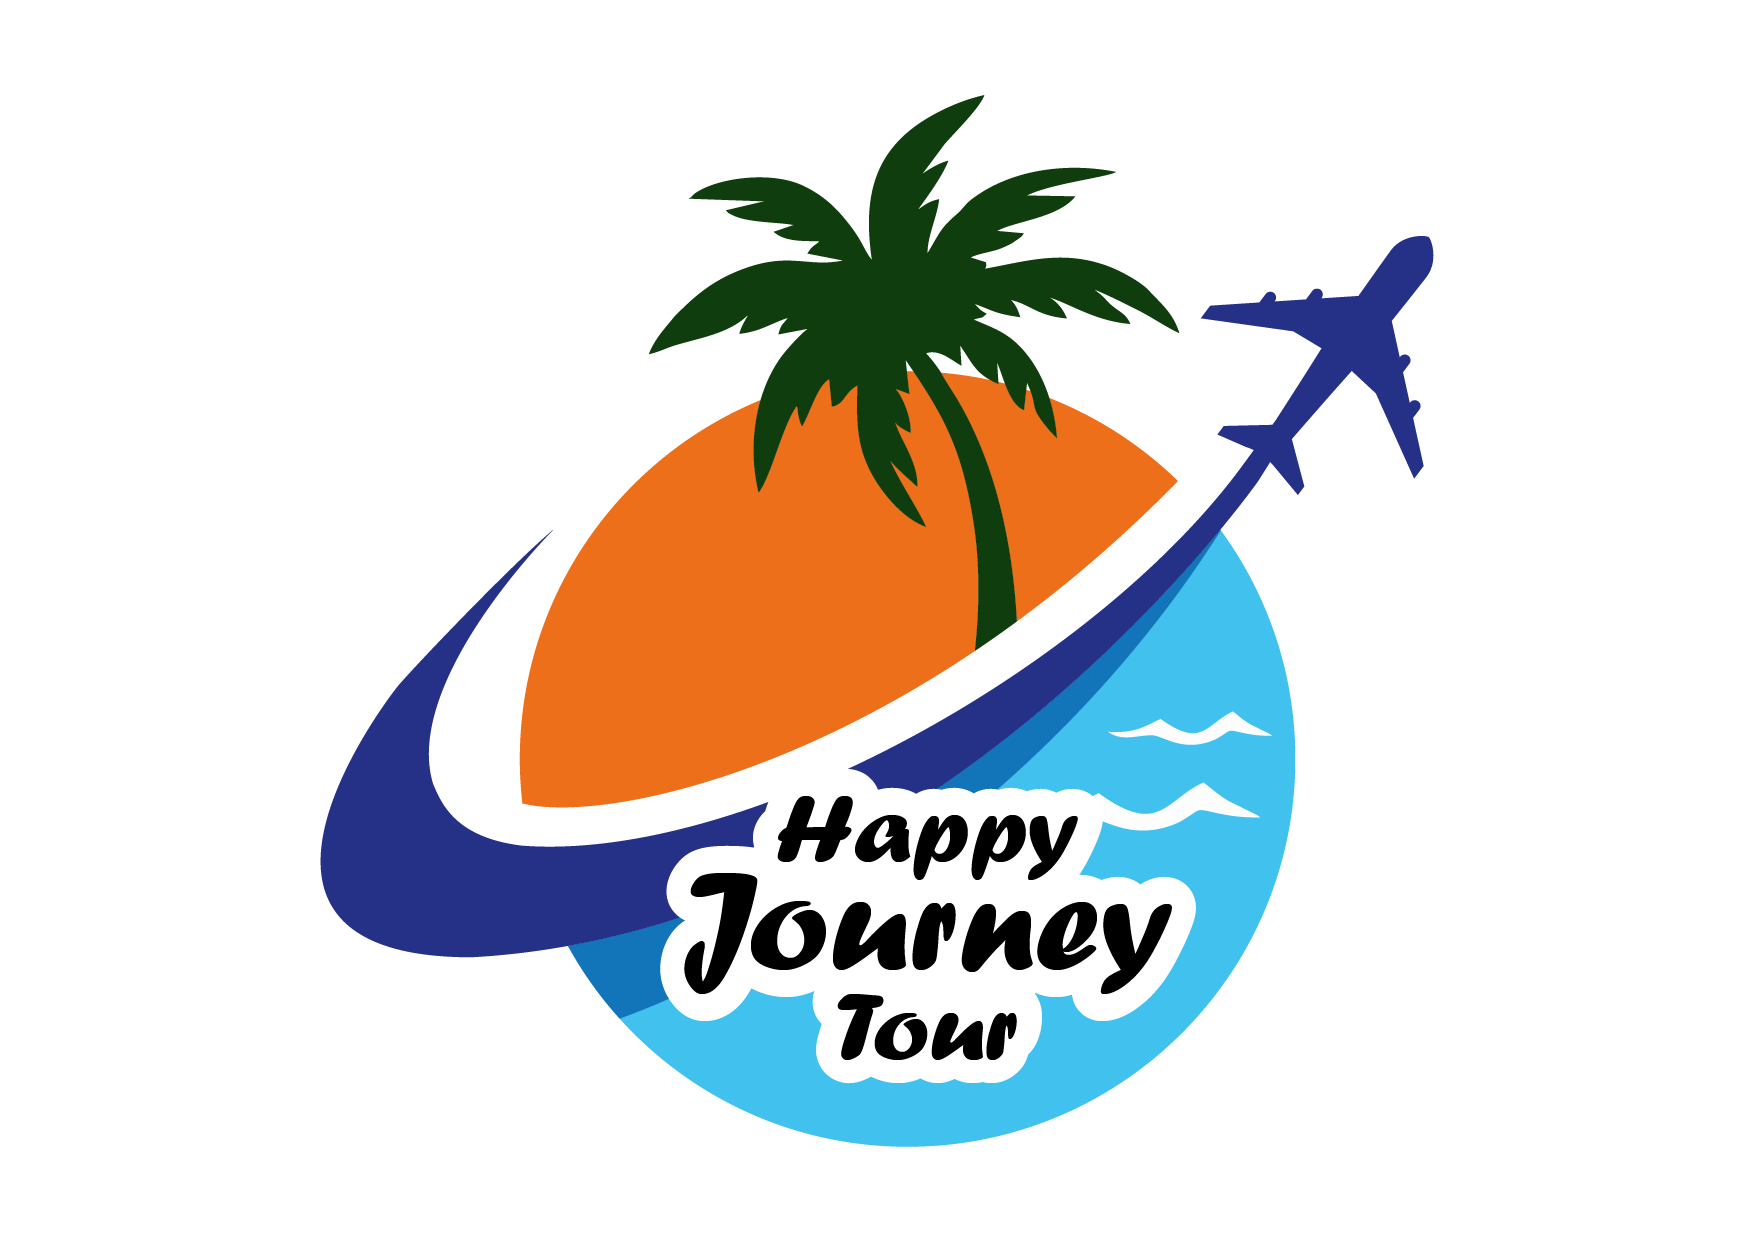 Happy journey tour-01